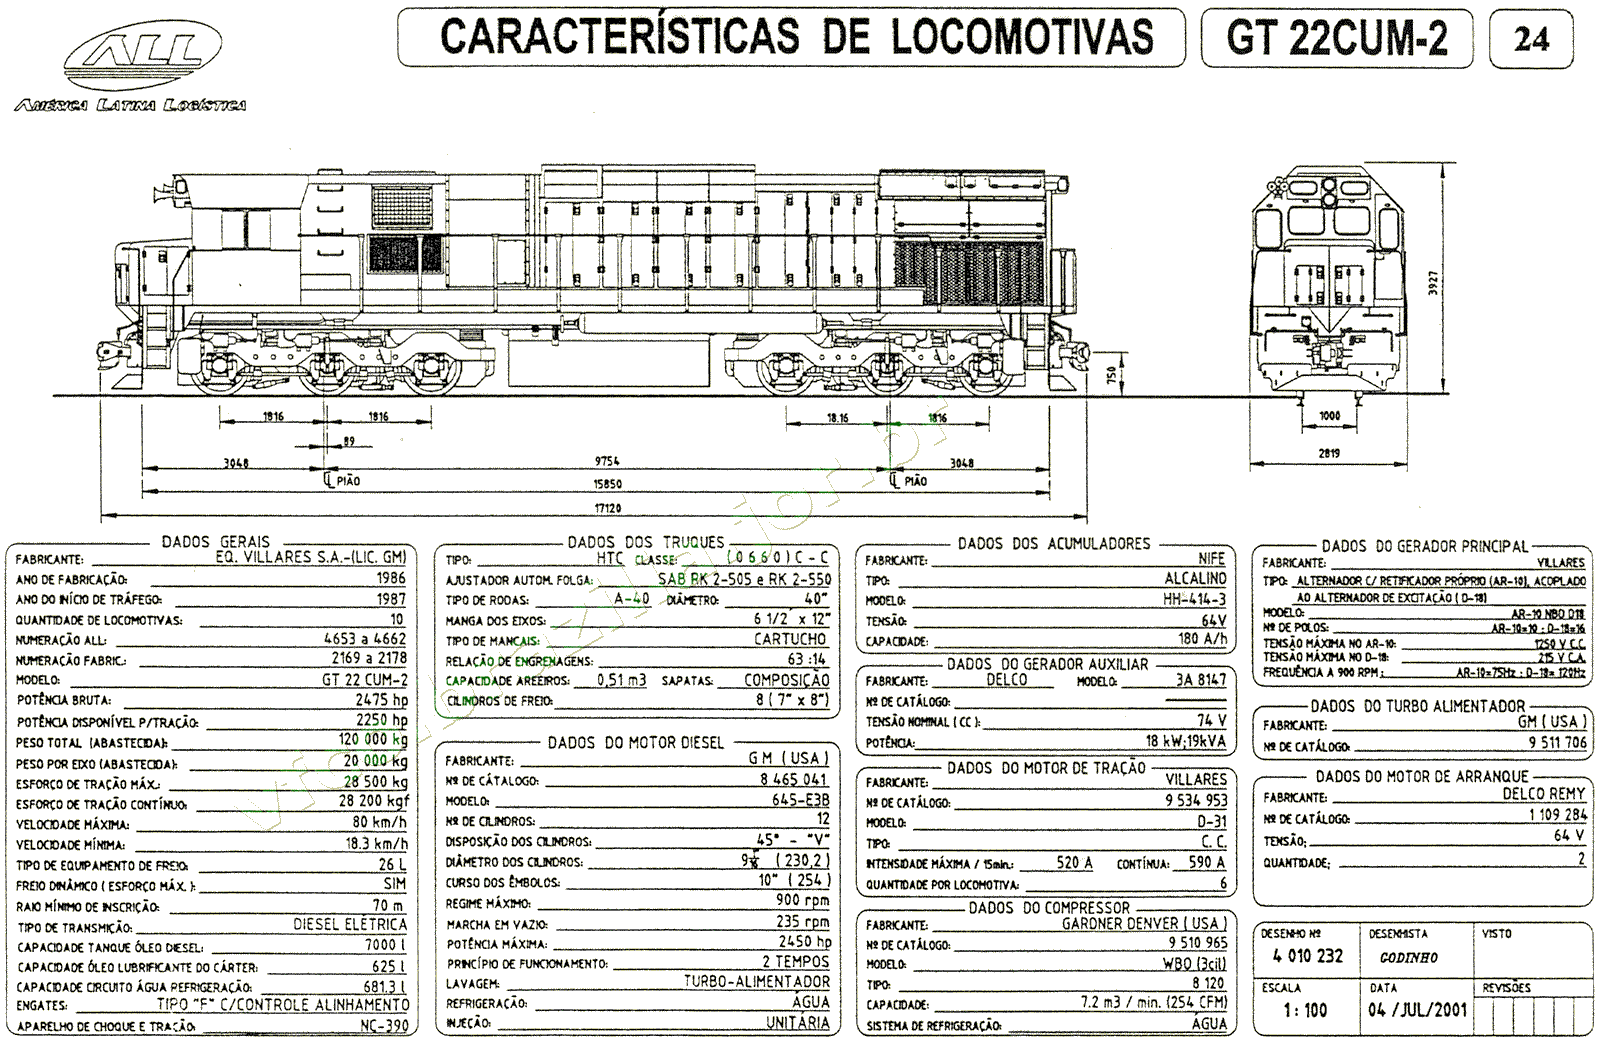 Planta e especificações da Locomotiva GT22CUM-2 da ferrovia ALL